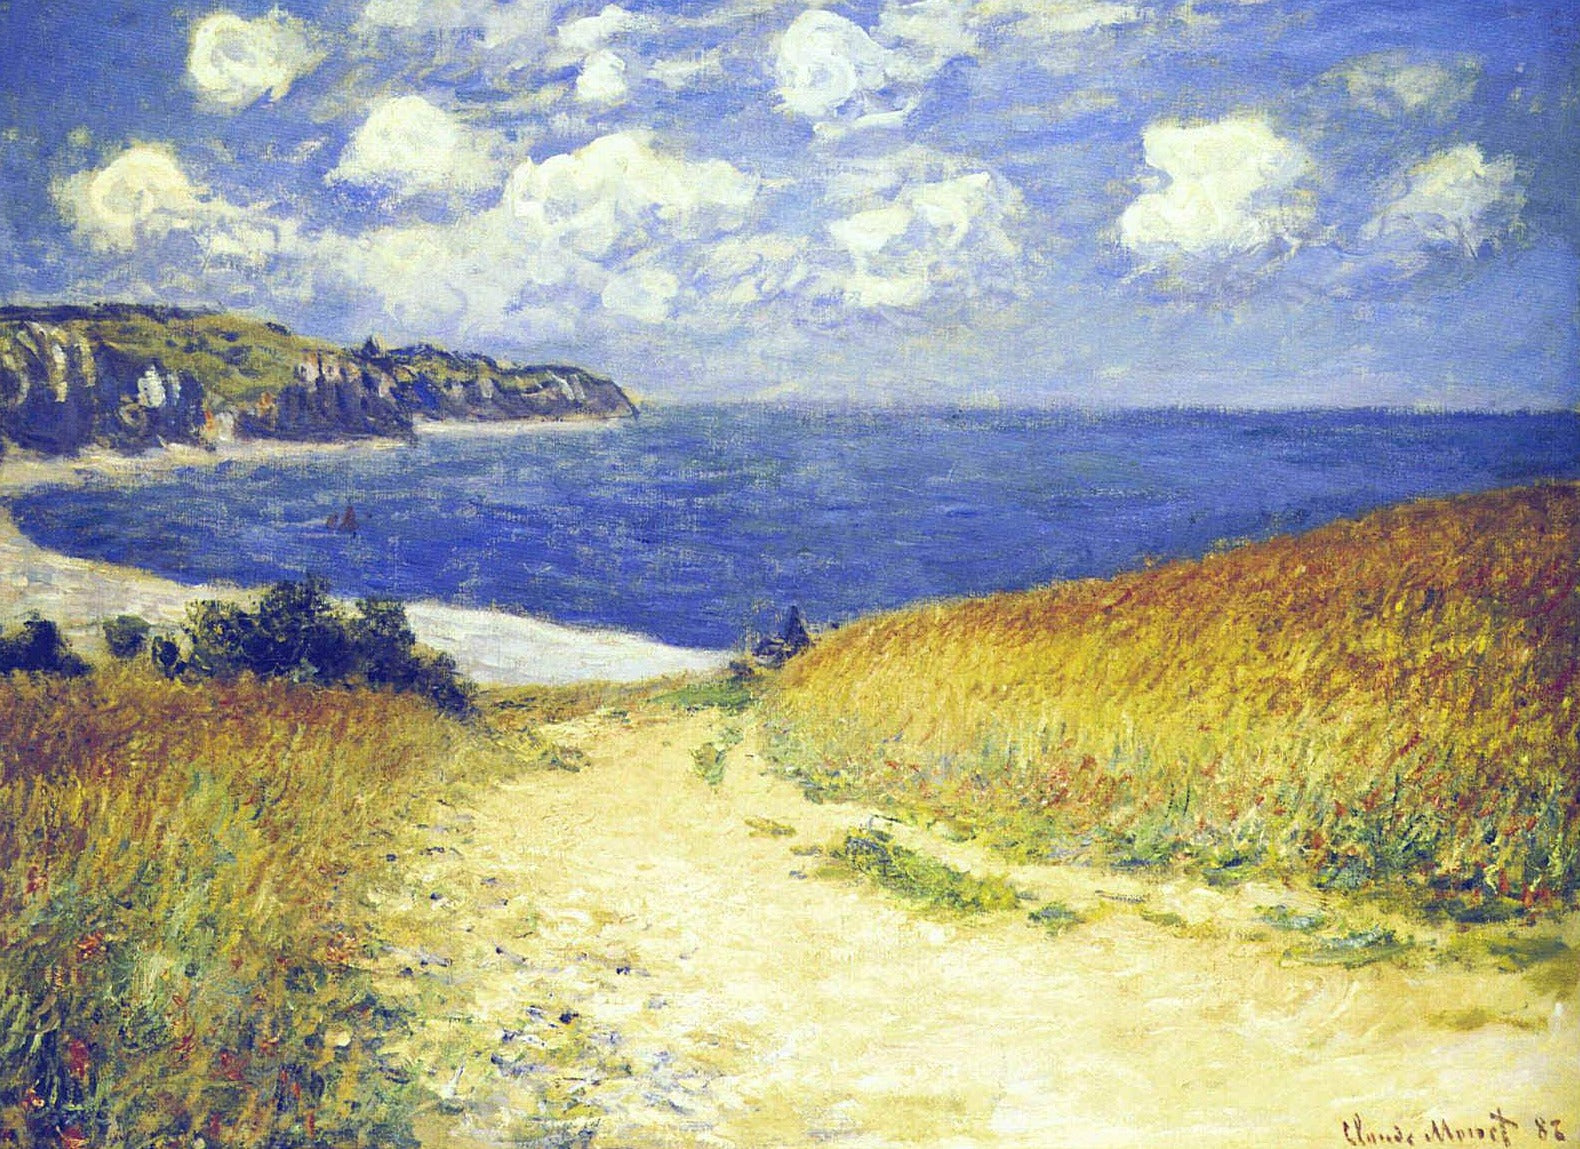 Chemin dans les blés à Pourville - Claude Monet